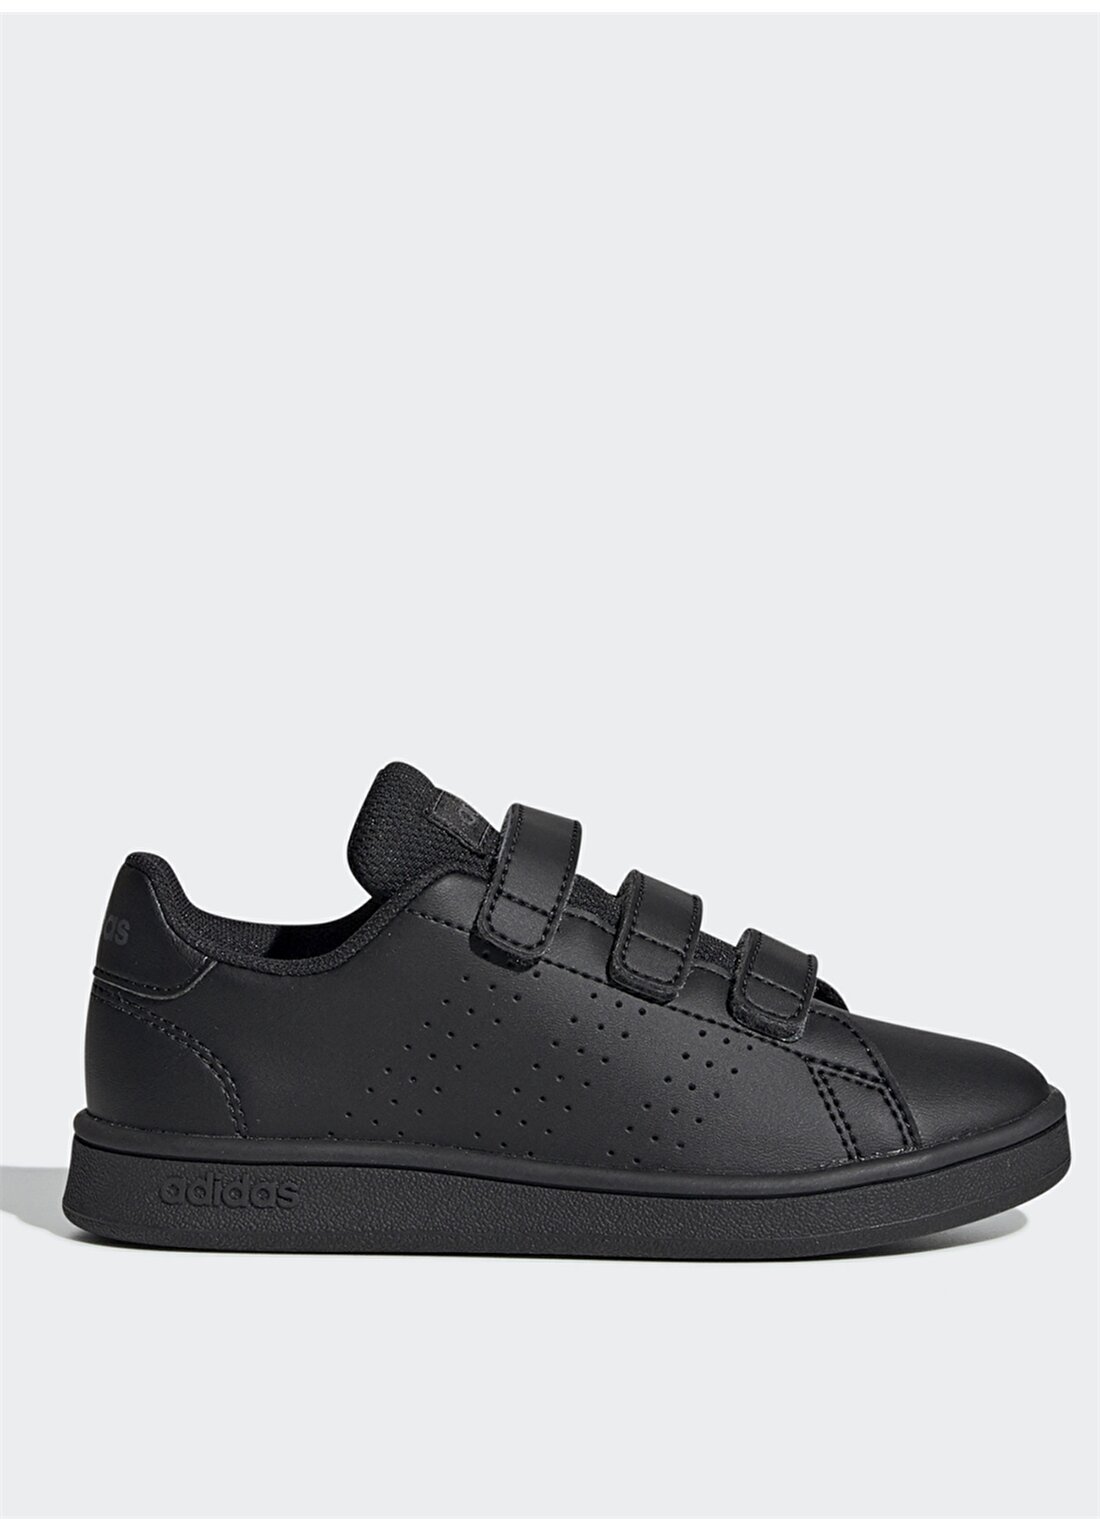 Adidas EF0222 Advantage C Siyah Çocuk Yürüyüş Ayakkabısı